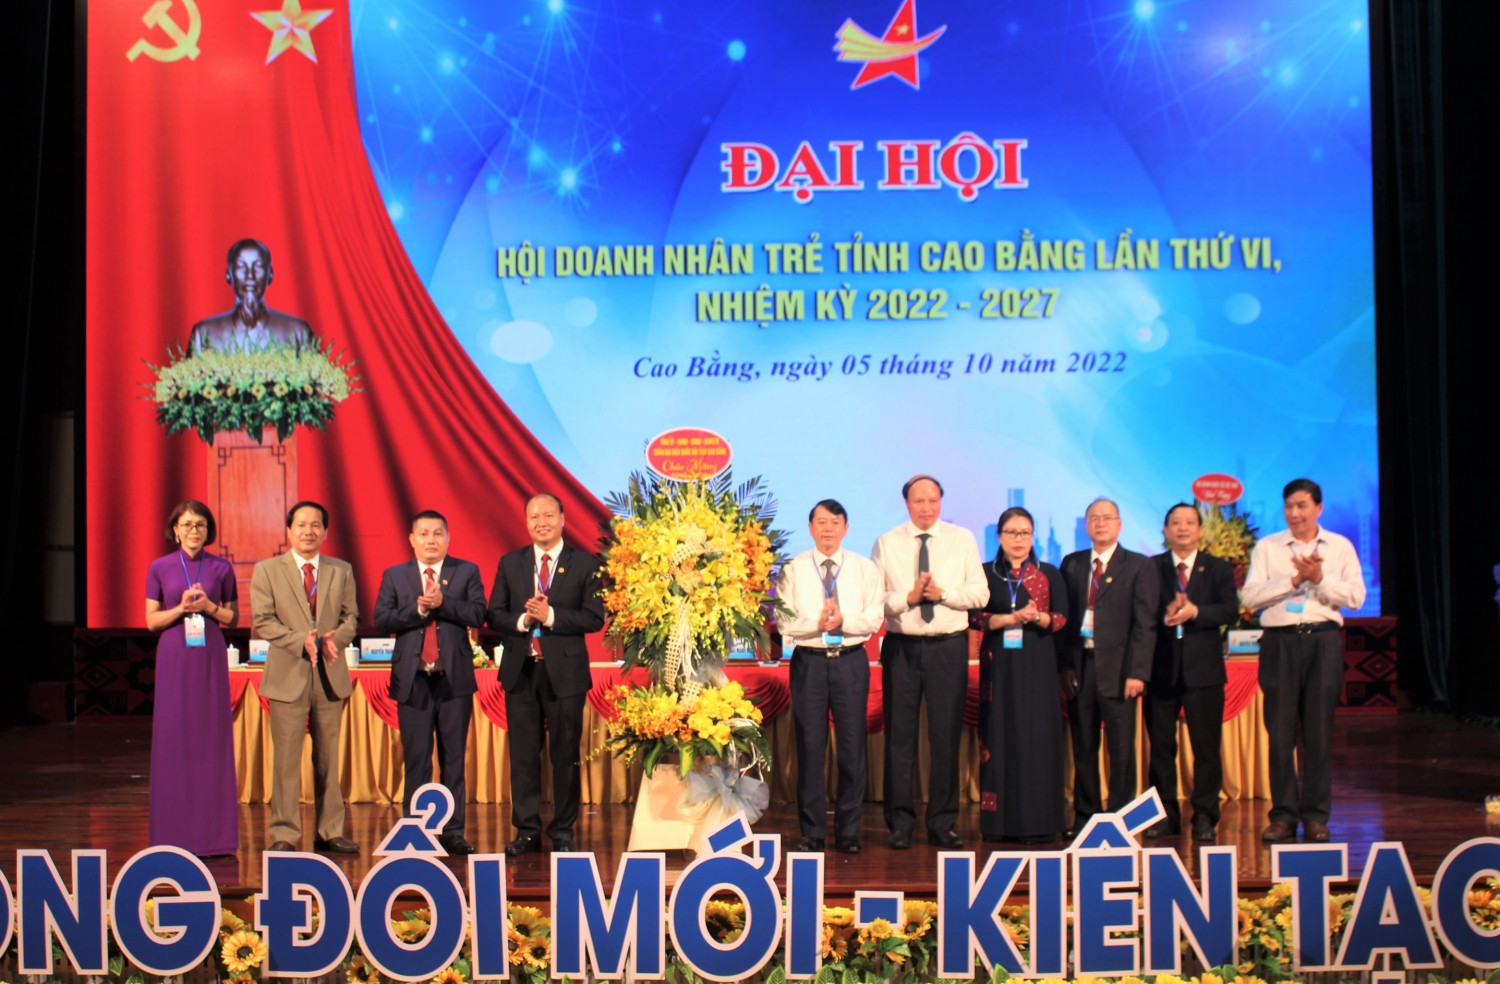 2 Chủ tịch UBND tỉnh Hoàng Xuân Ánh chúc mừng Đại hội Hội Doanh nhân trẻ tỉnh khóa VI